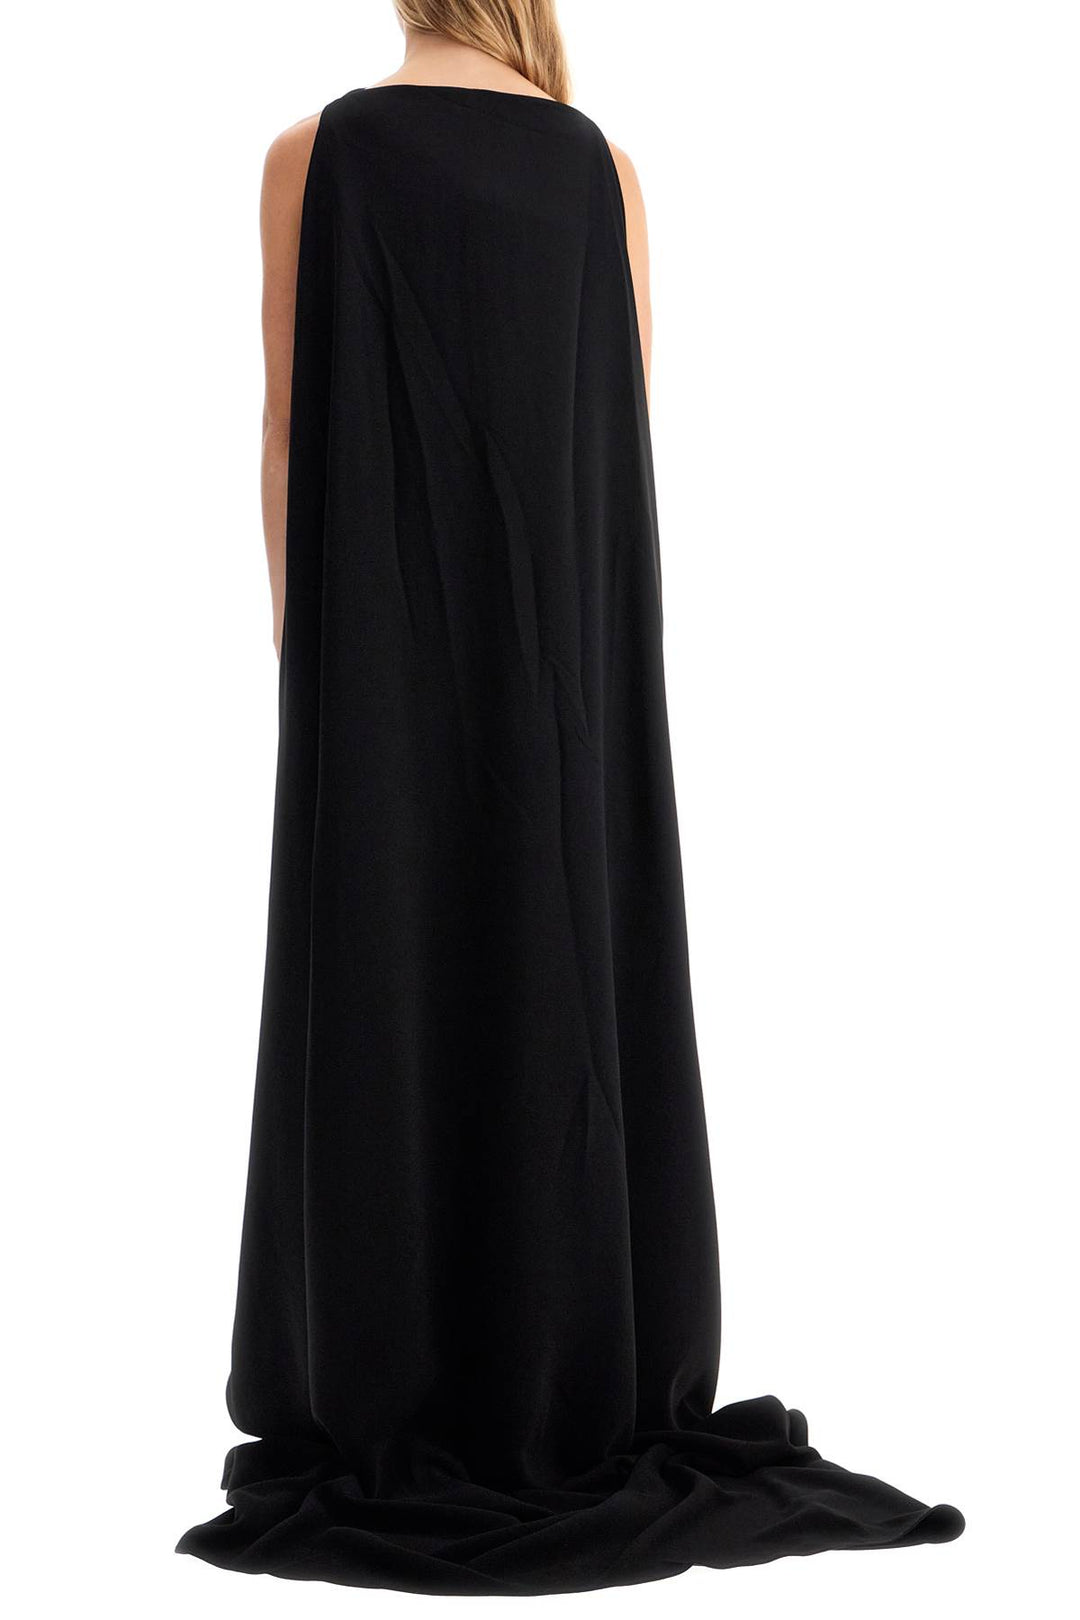 Solace London 'Kaila' Long Dress   Black